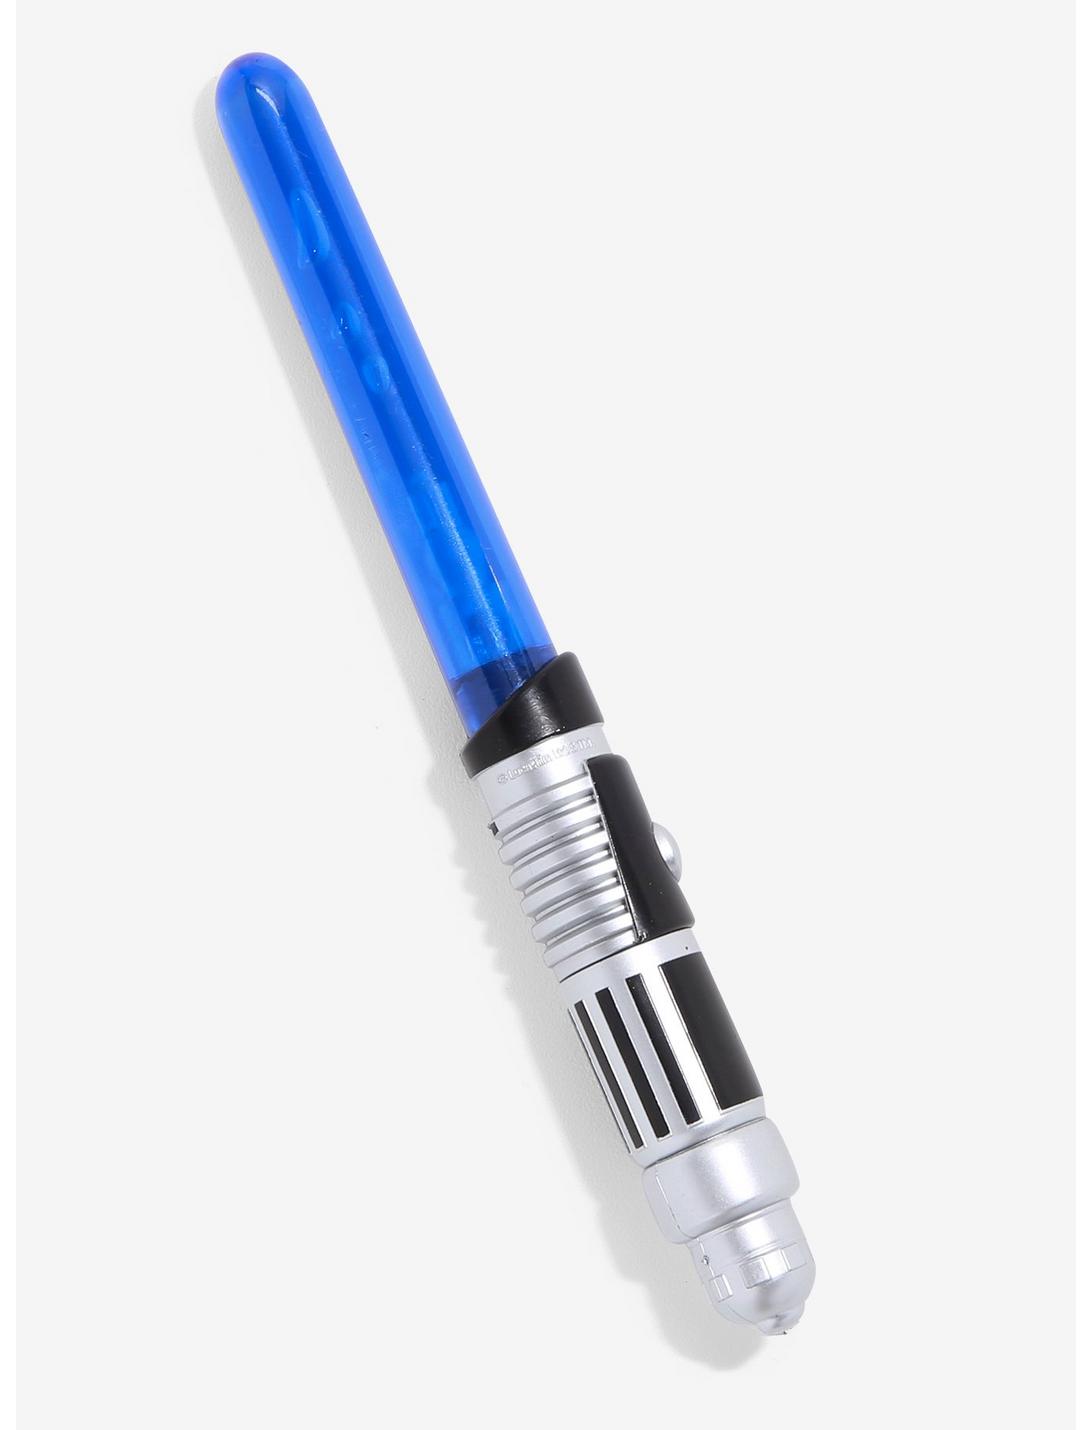 Star Wars Luke Skywalker Lightsaber Pen, , hi-res